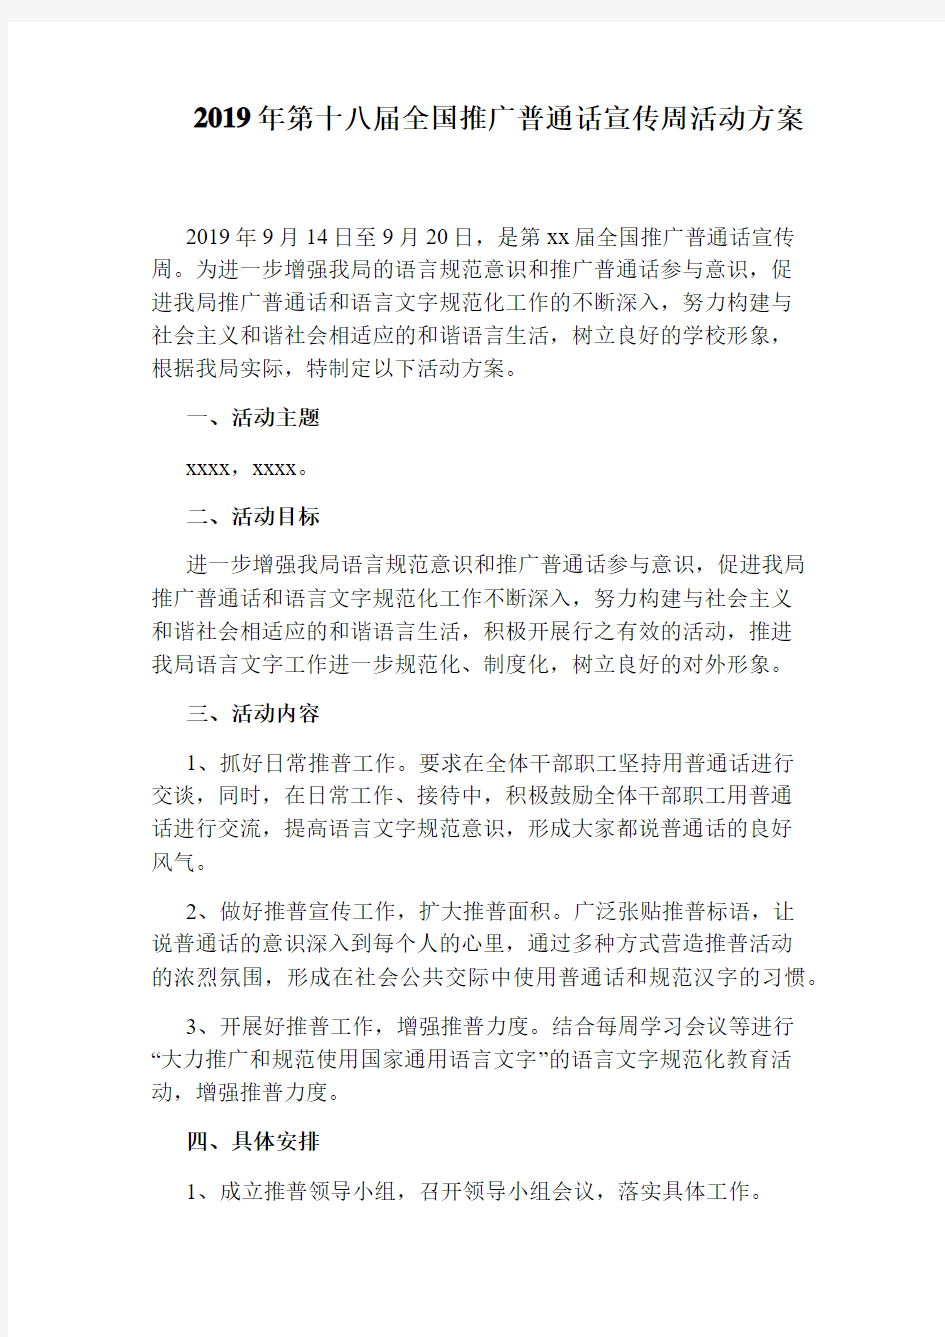 2019年第十八届全国推广普通话宣传周活动方案